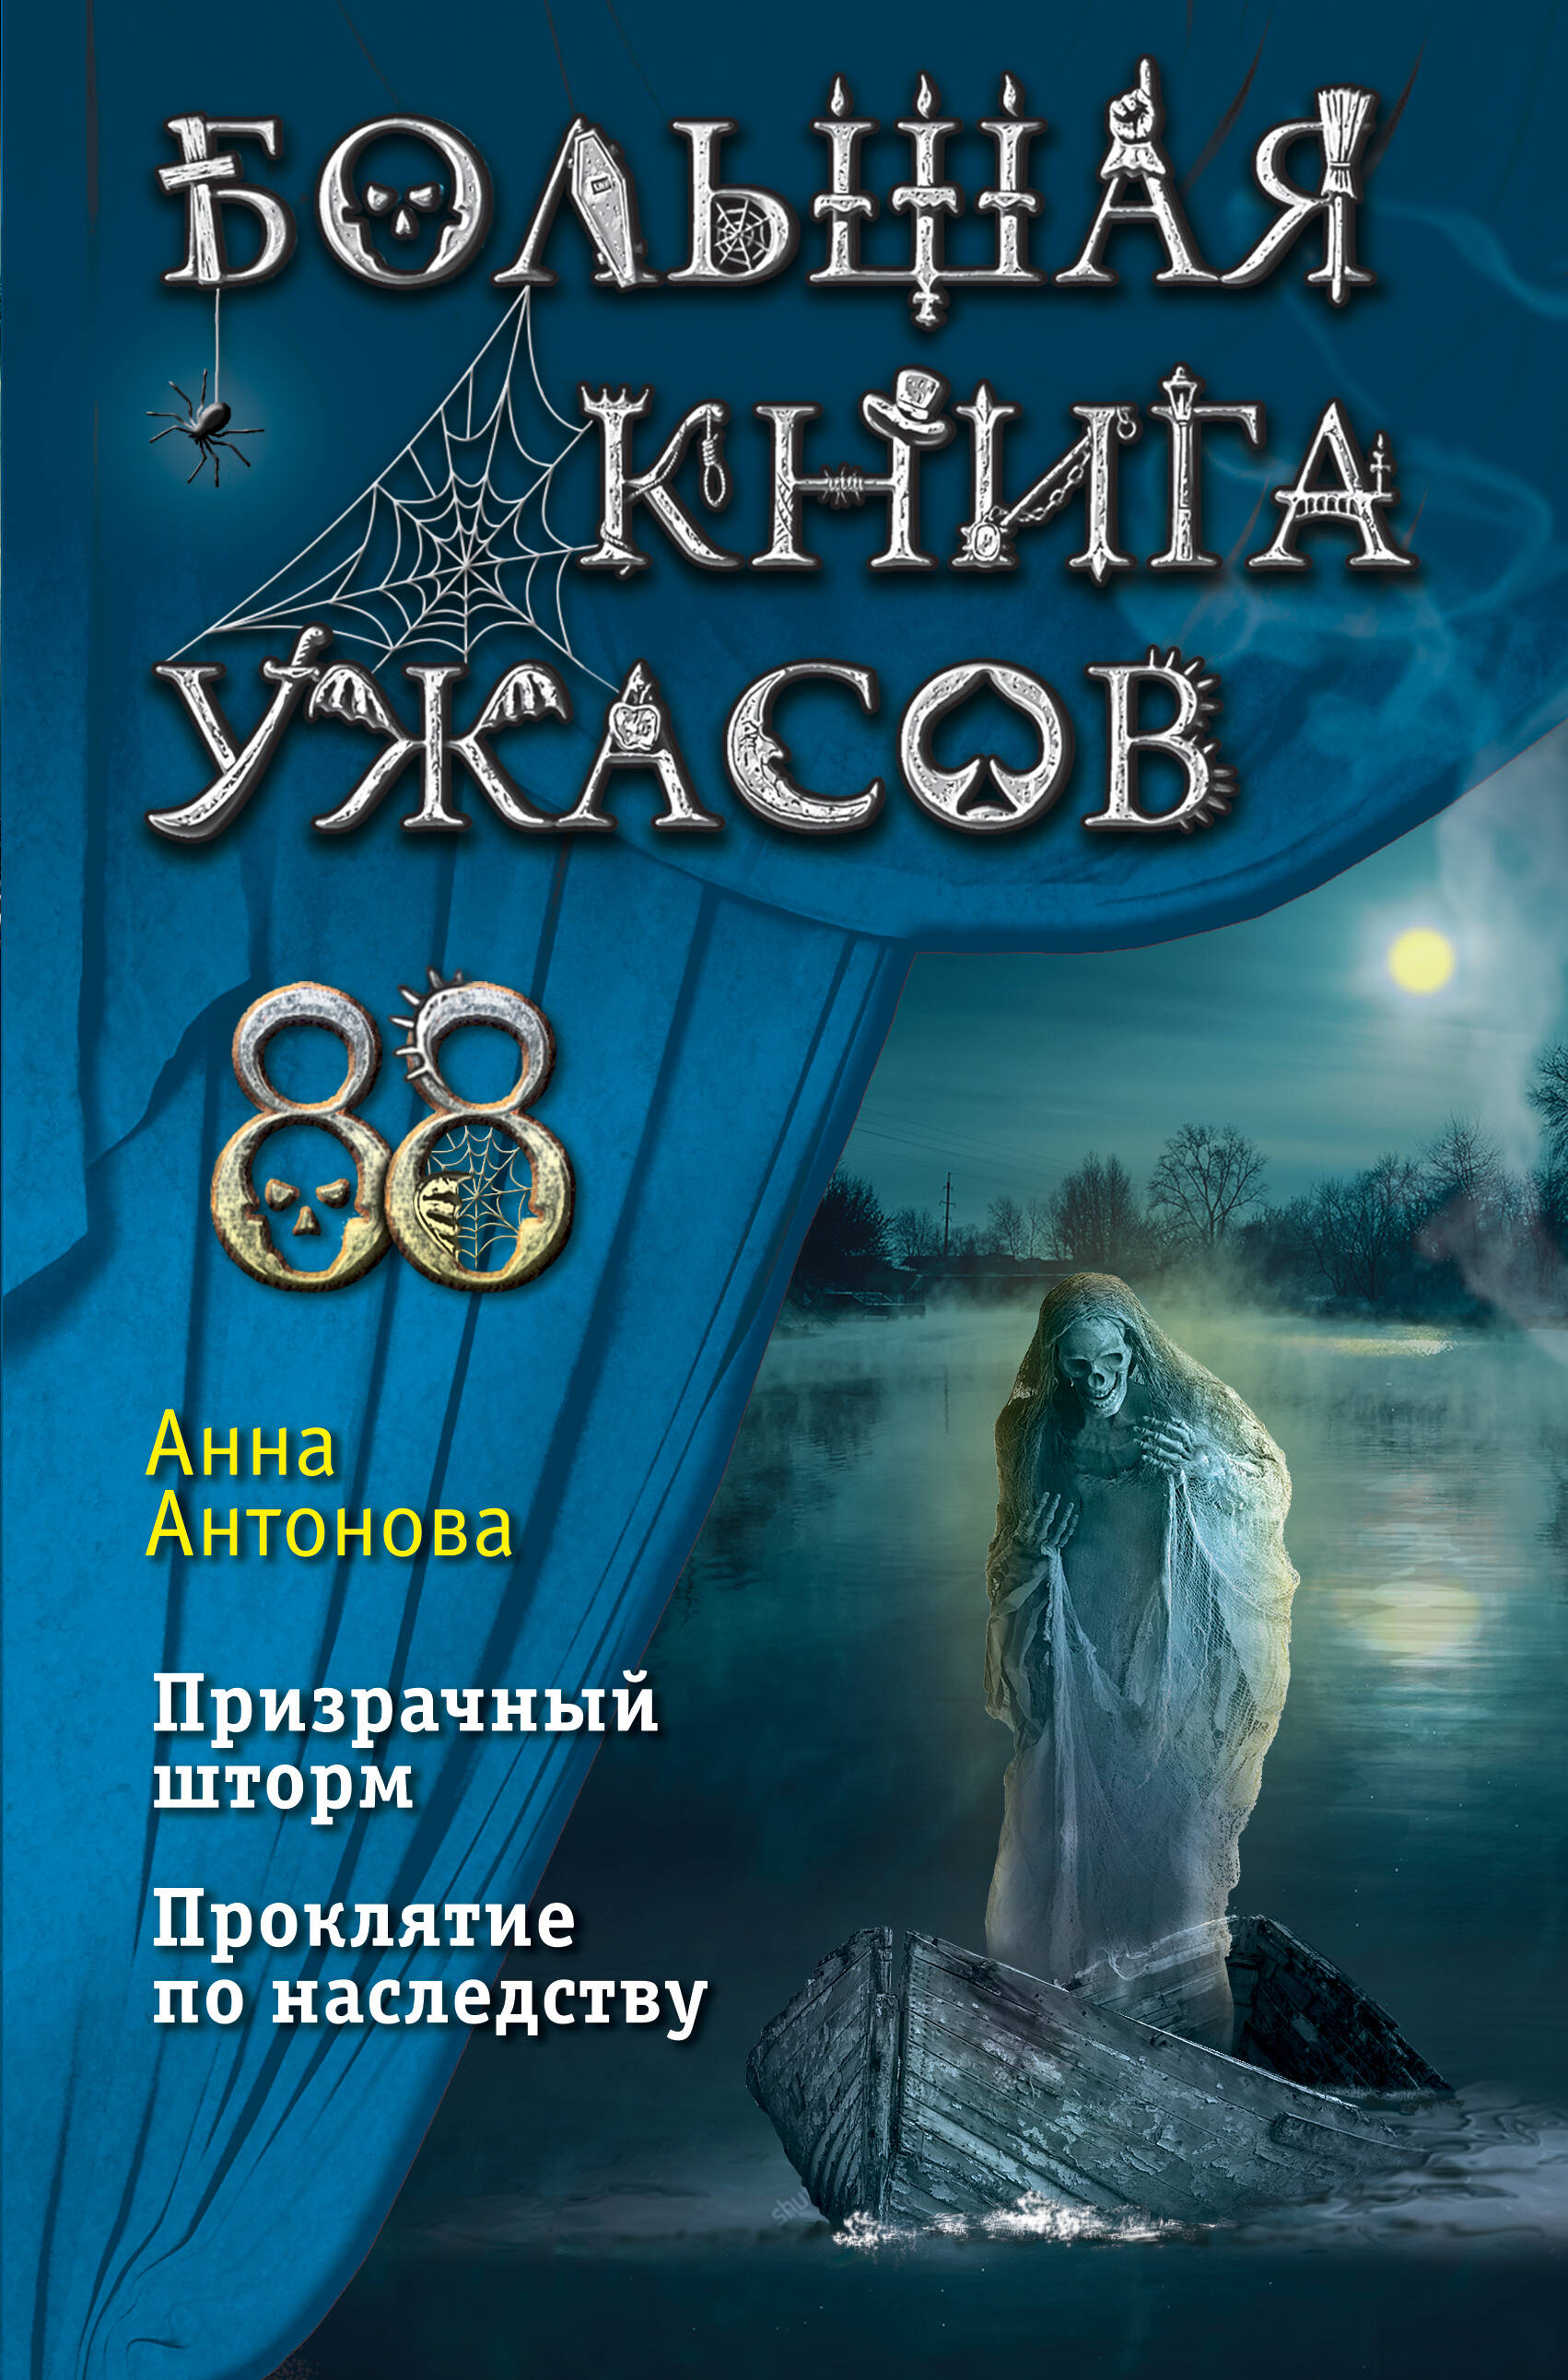 Антонова Анна Евгеньевна - Большая книга ужасов 88